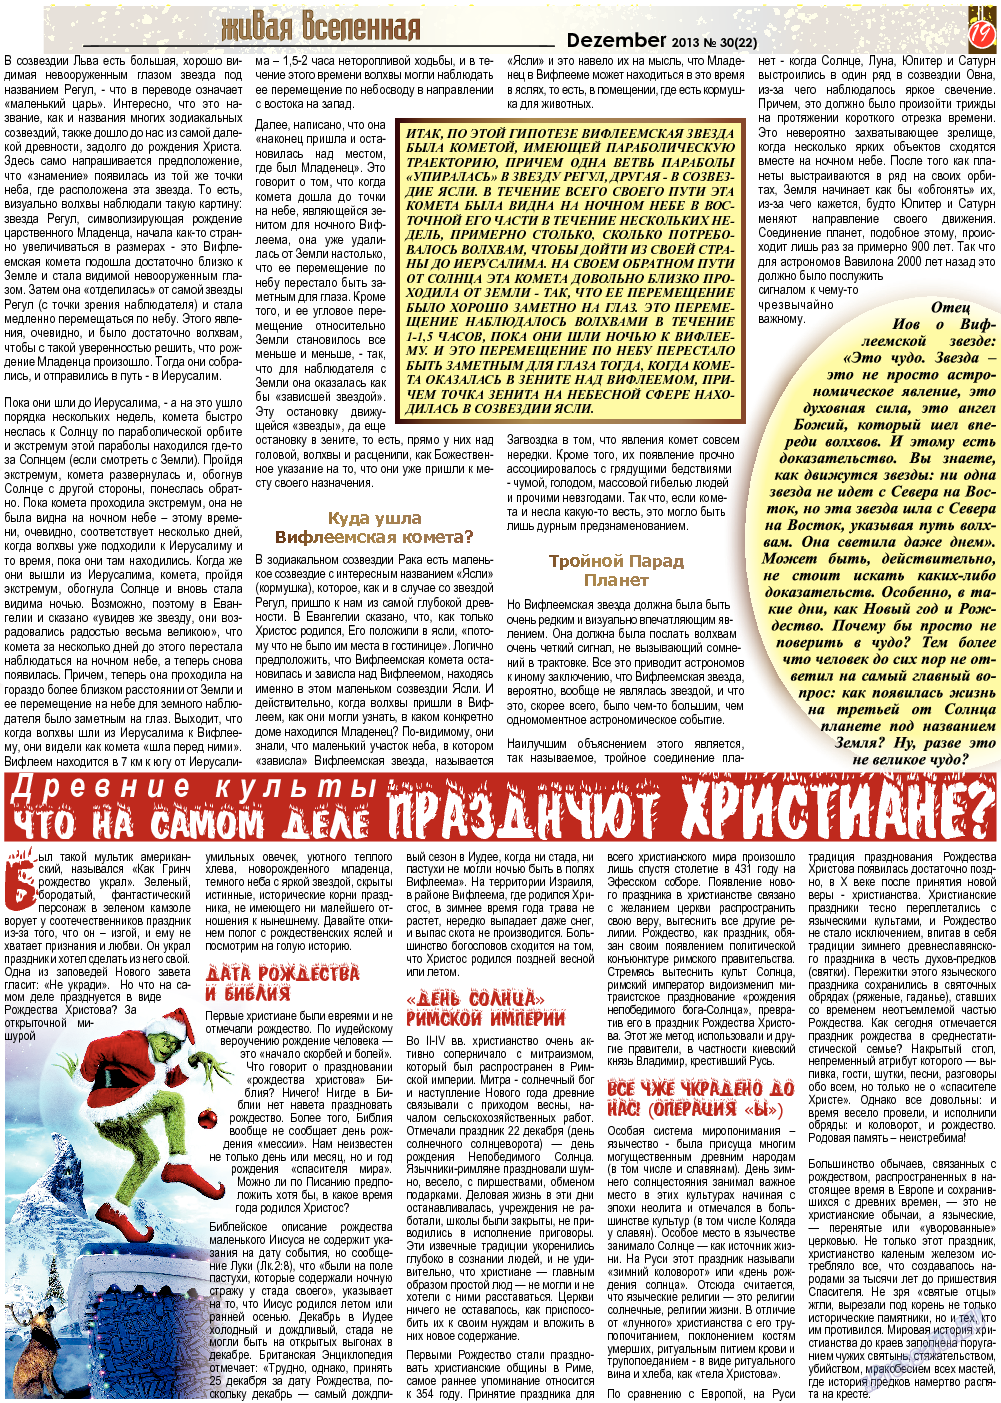 Все pro все (газета). 2013 год, номер 30, стр. 19